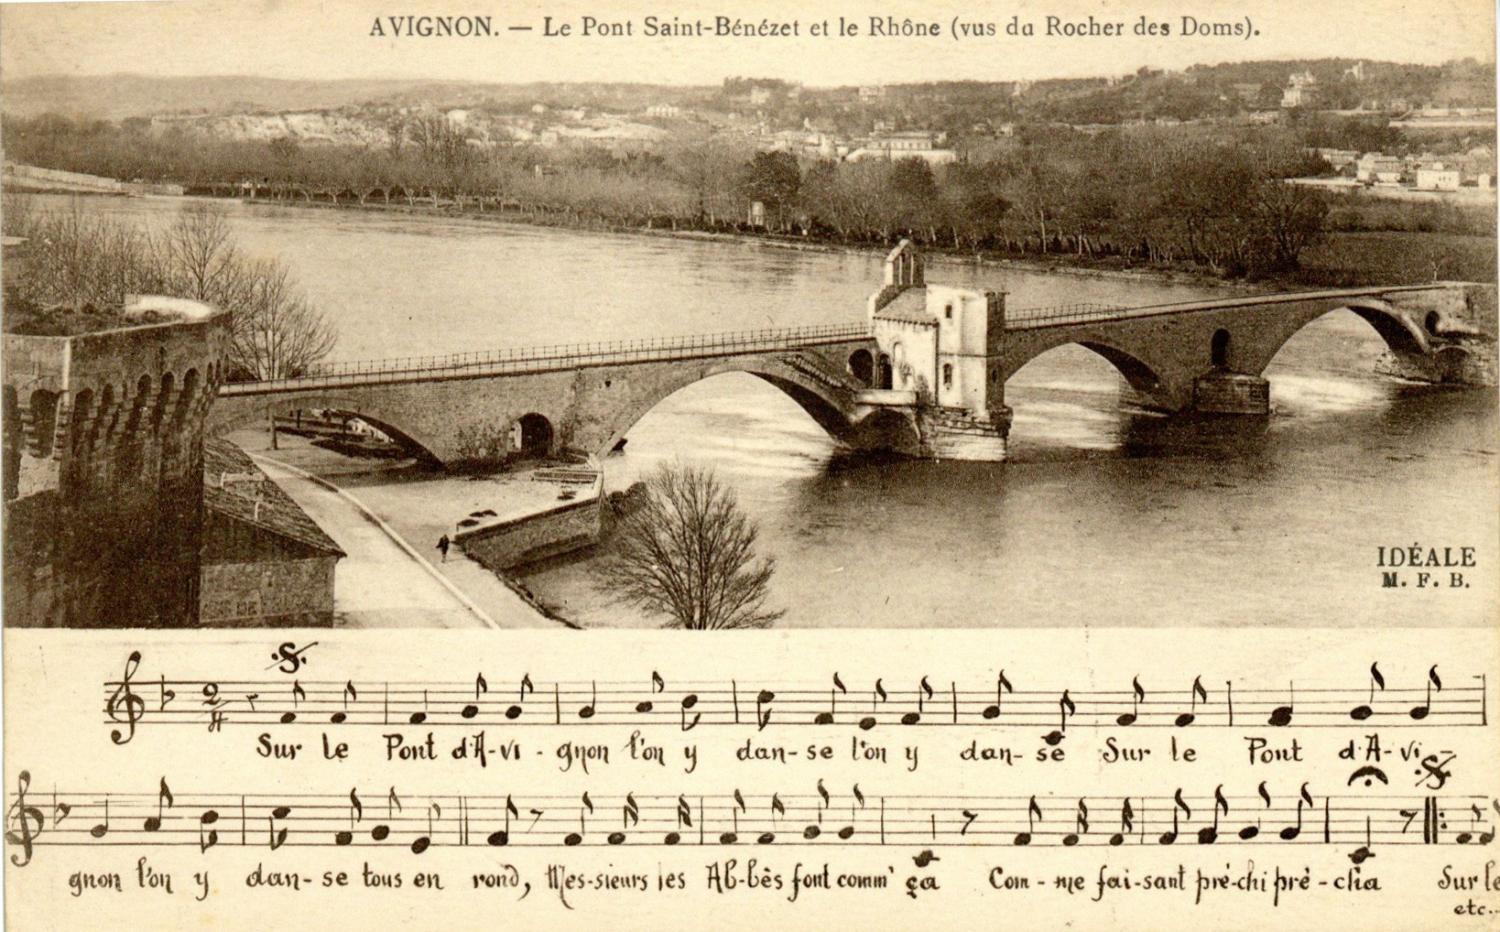 Avignon - Le Pont St-Bénézet et le Rhône (vus du Rocher des Doms).